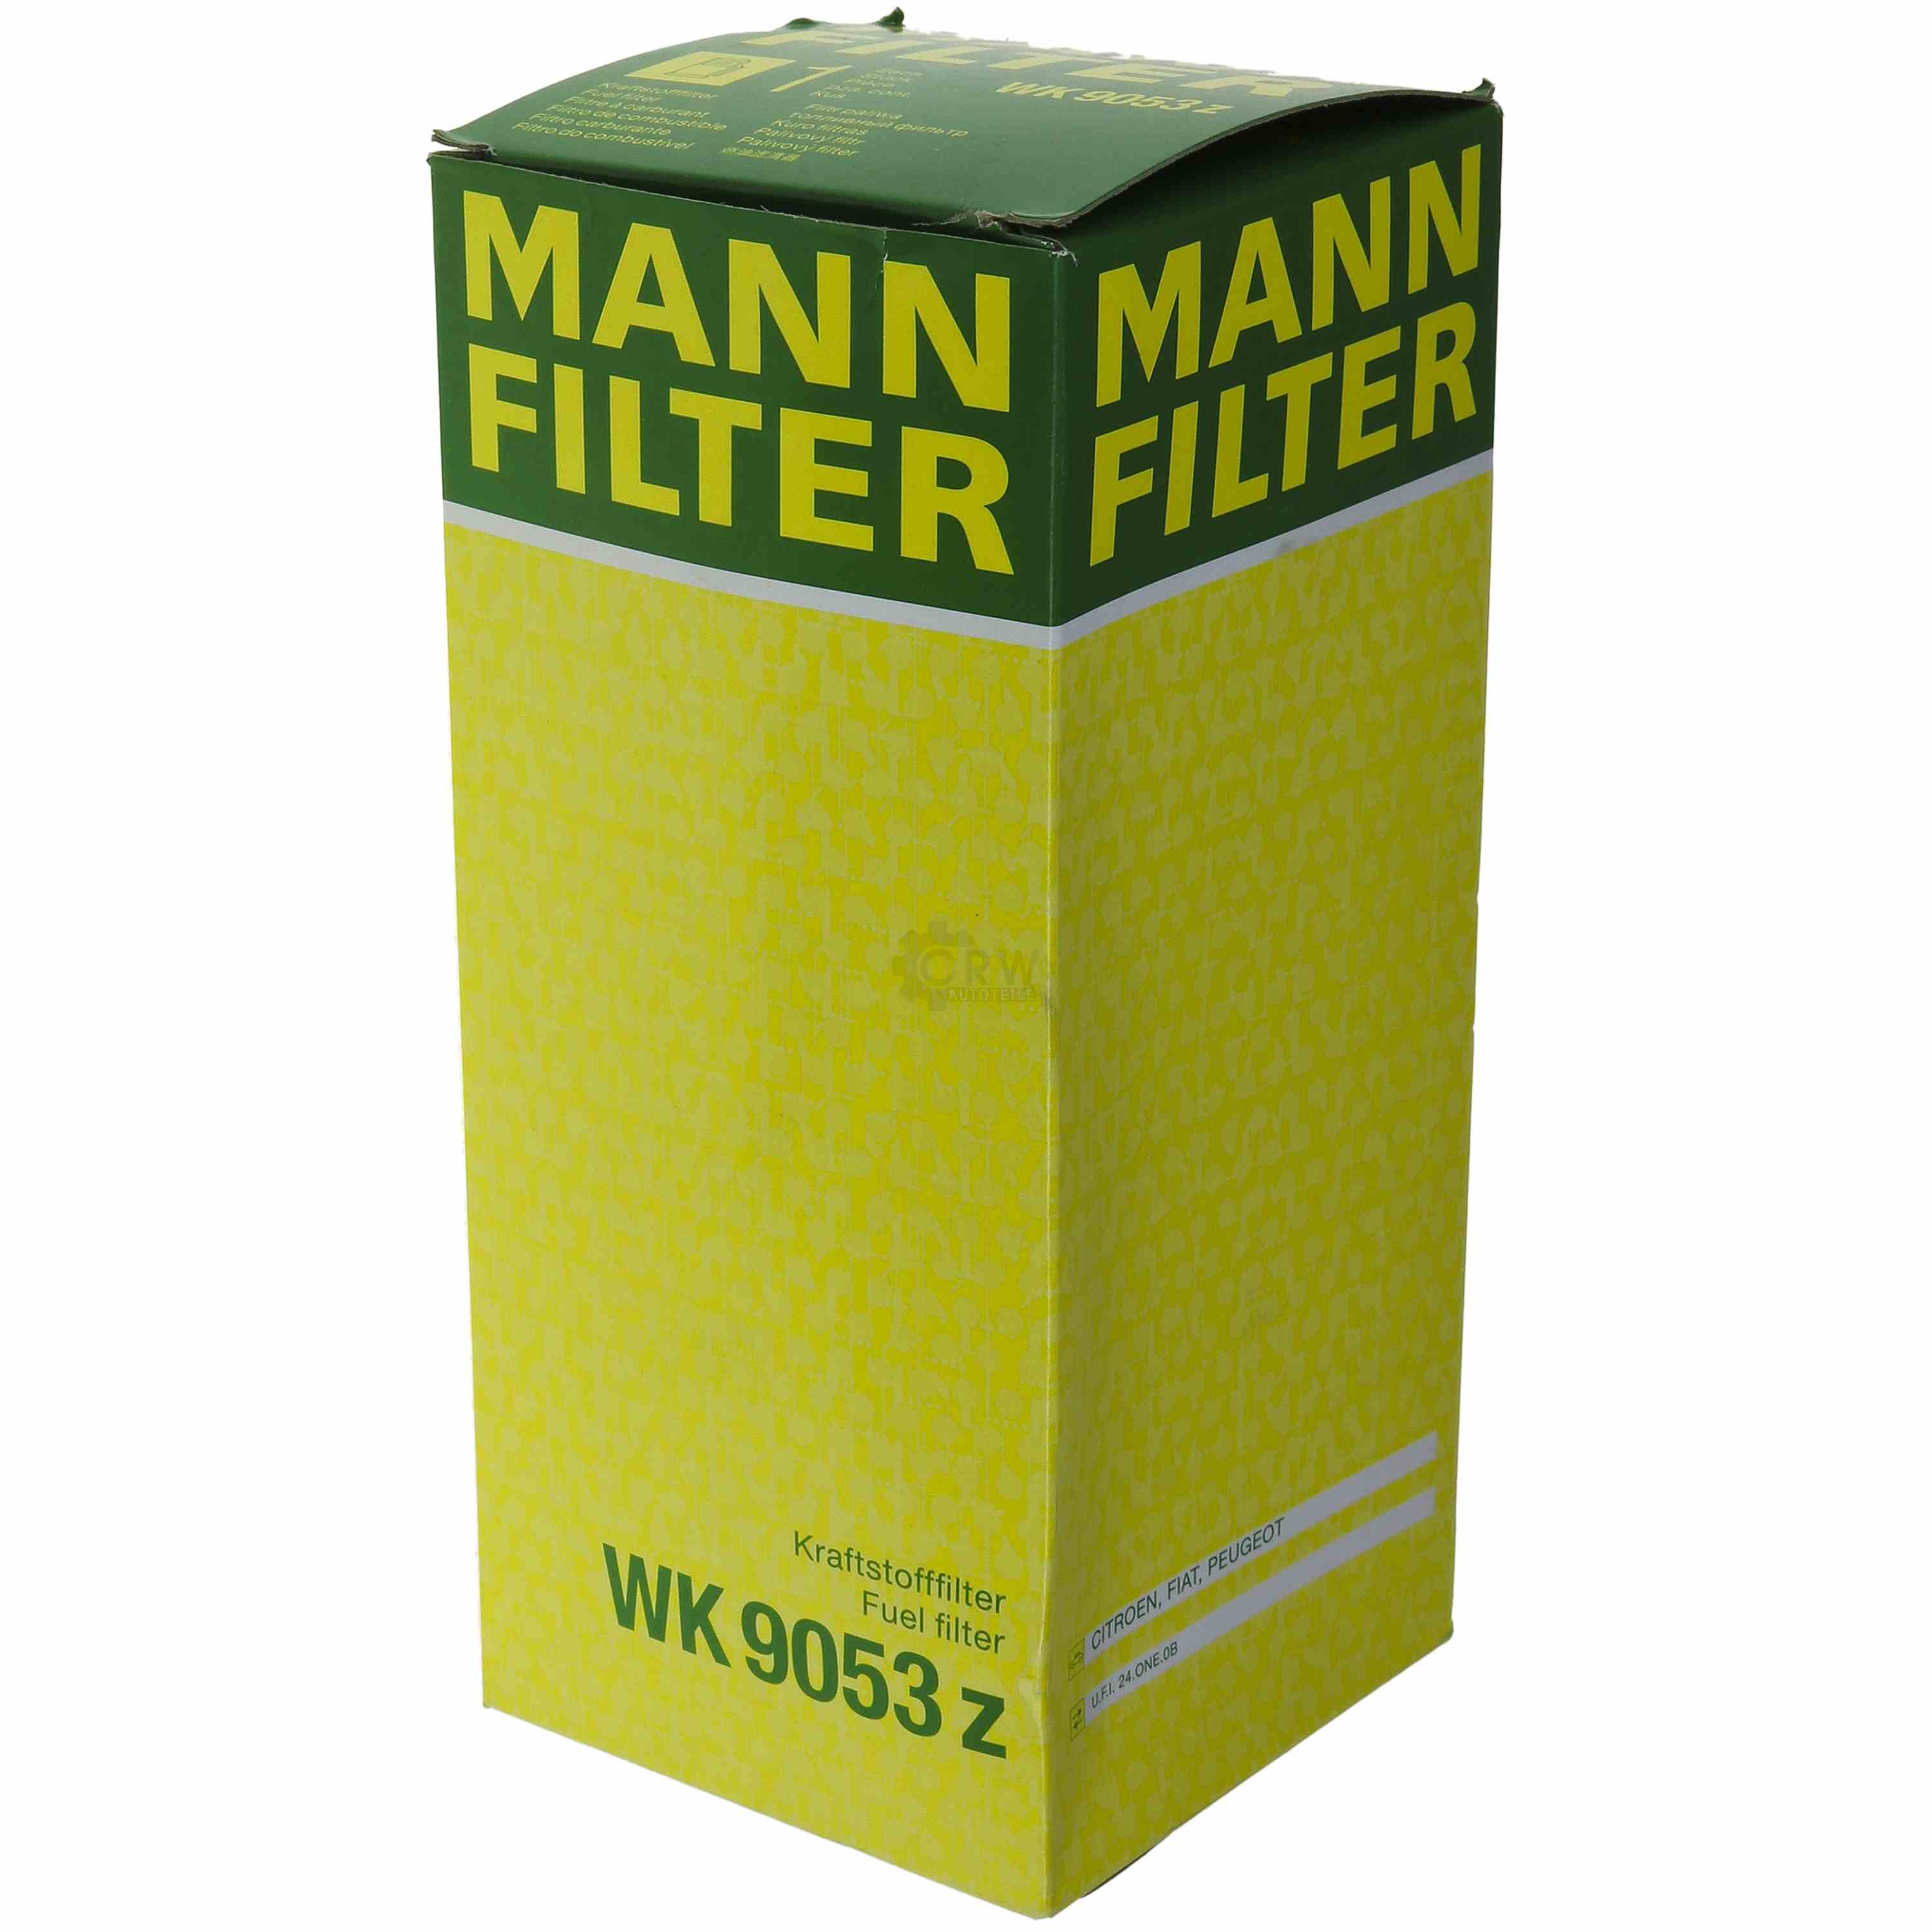 MANN-FILTER Kraftstofffilter WK 9053 z Fuel Filter